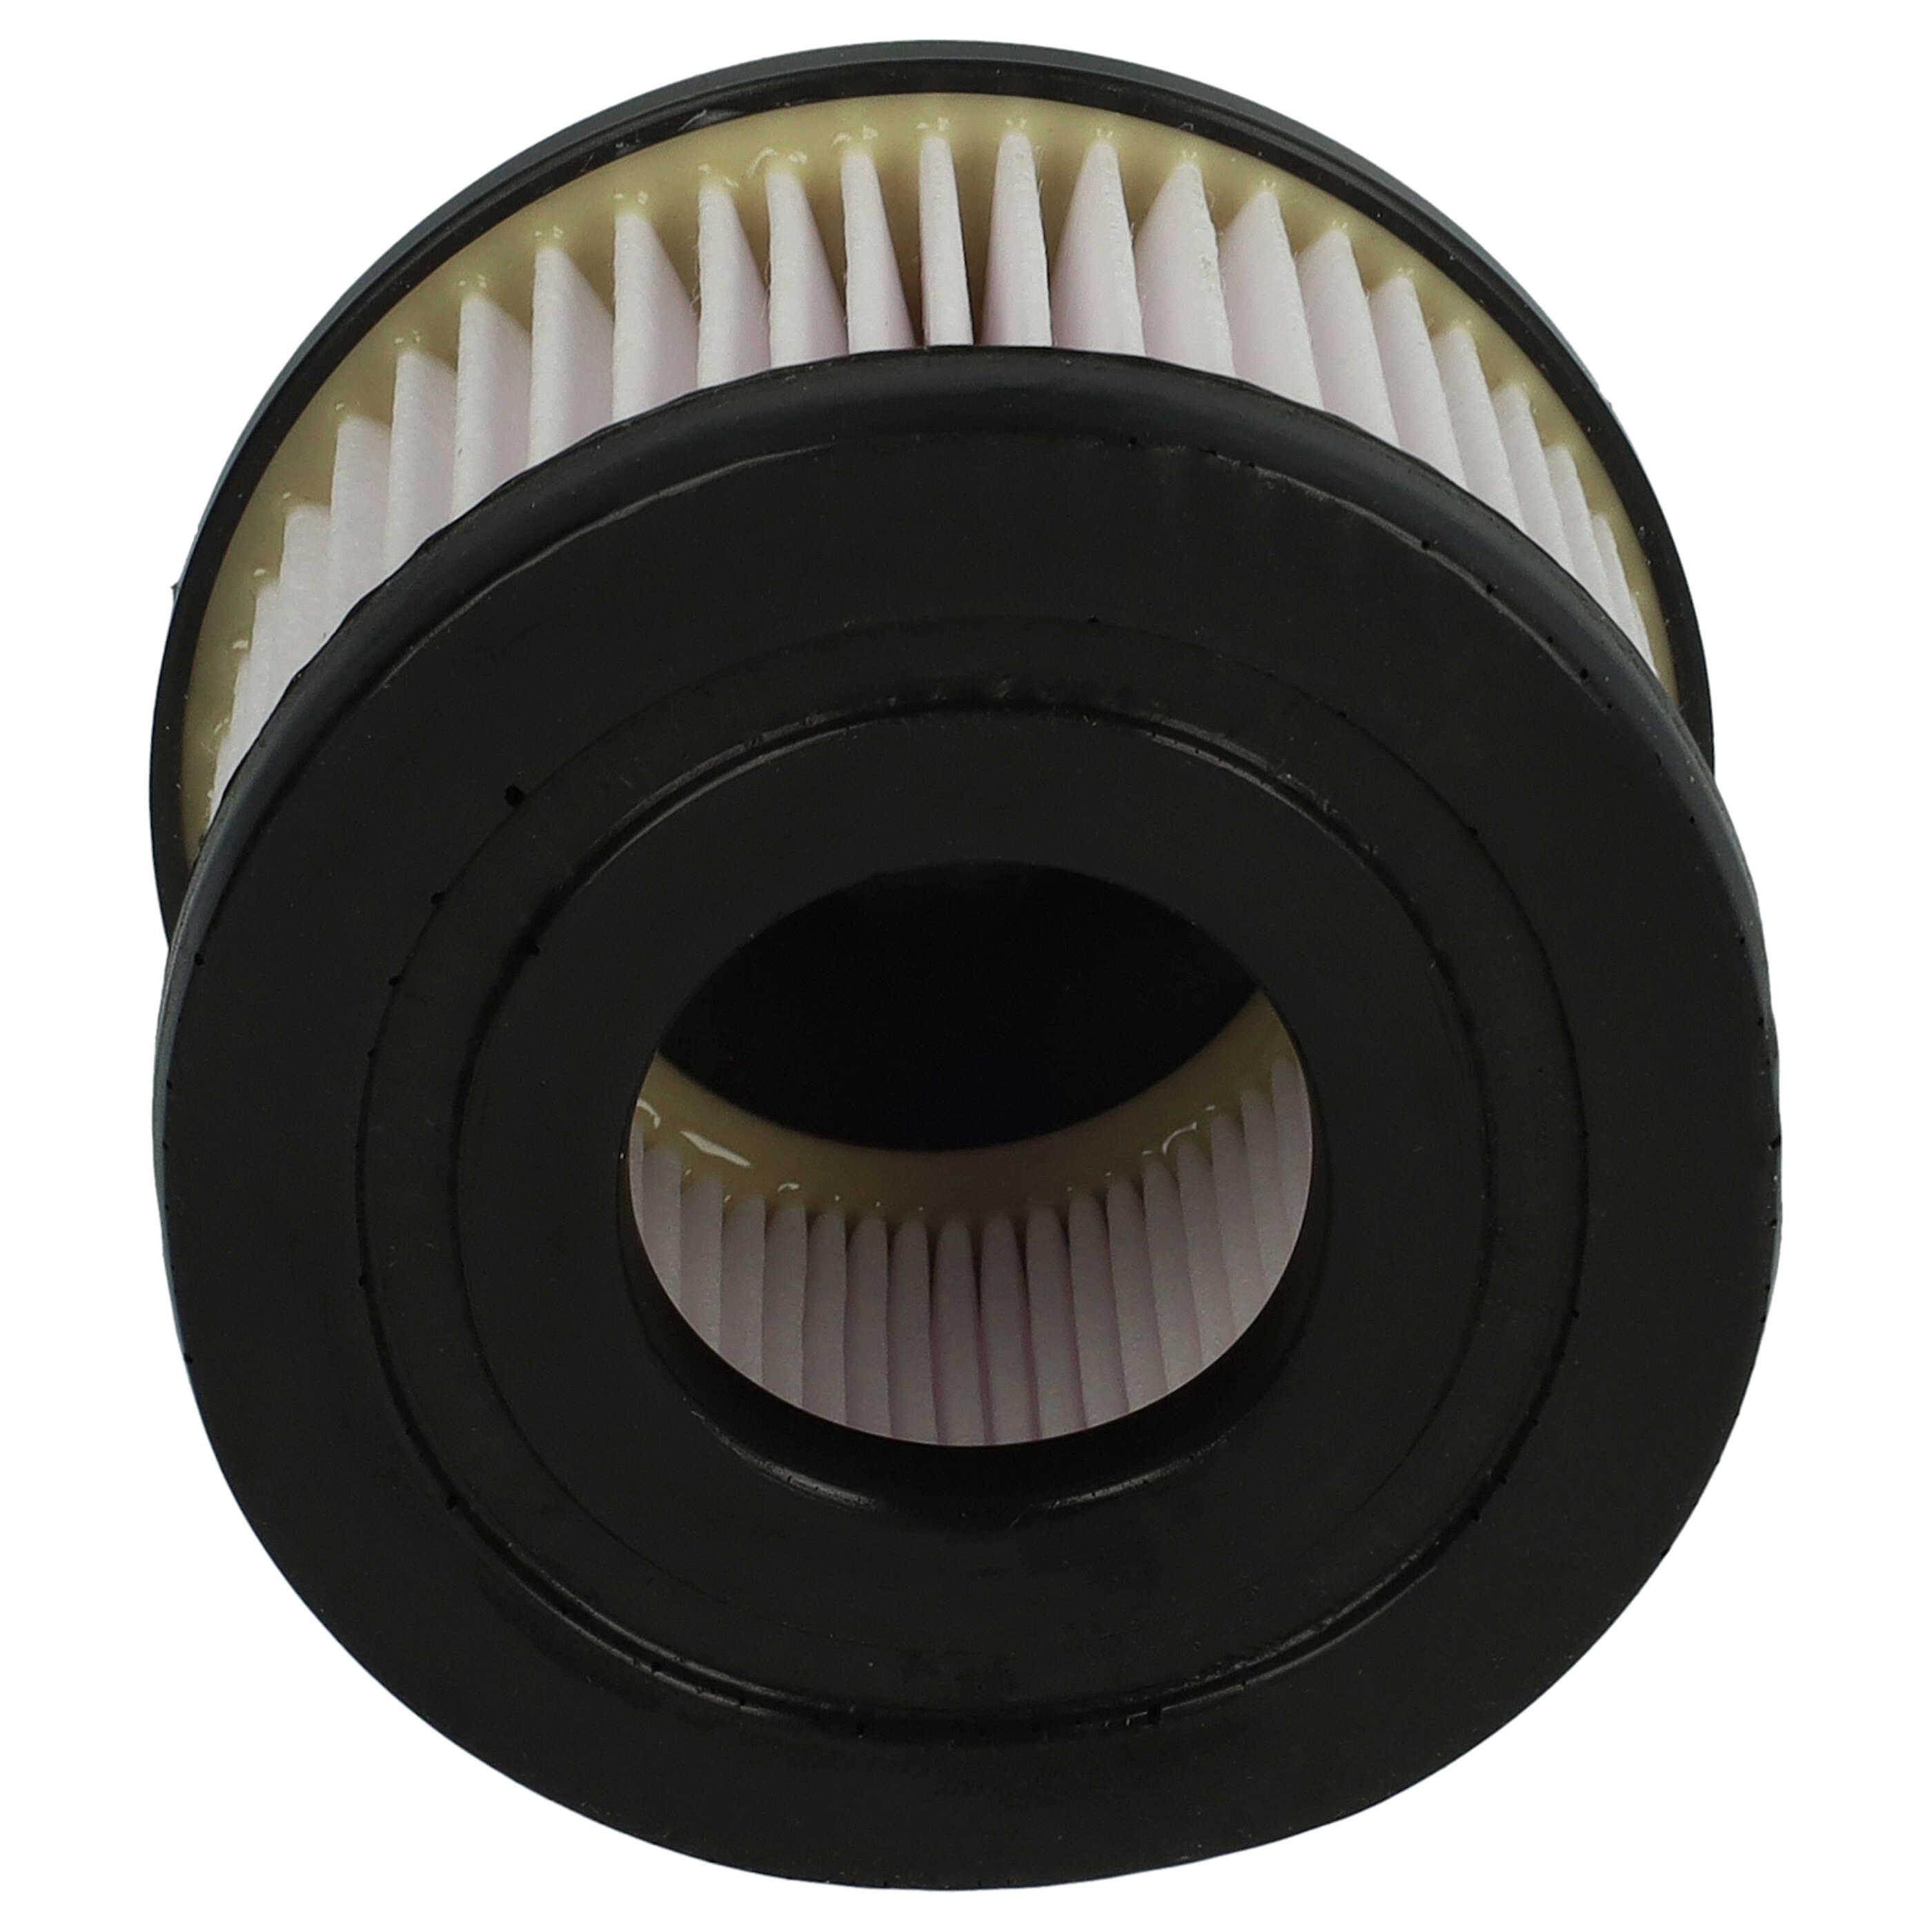 Filtre remplace Rowenta ZR009004, 3221614007446 pour aspirateur - filtre plissé